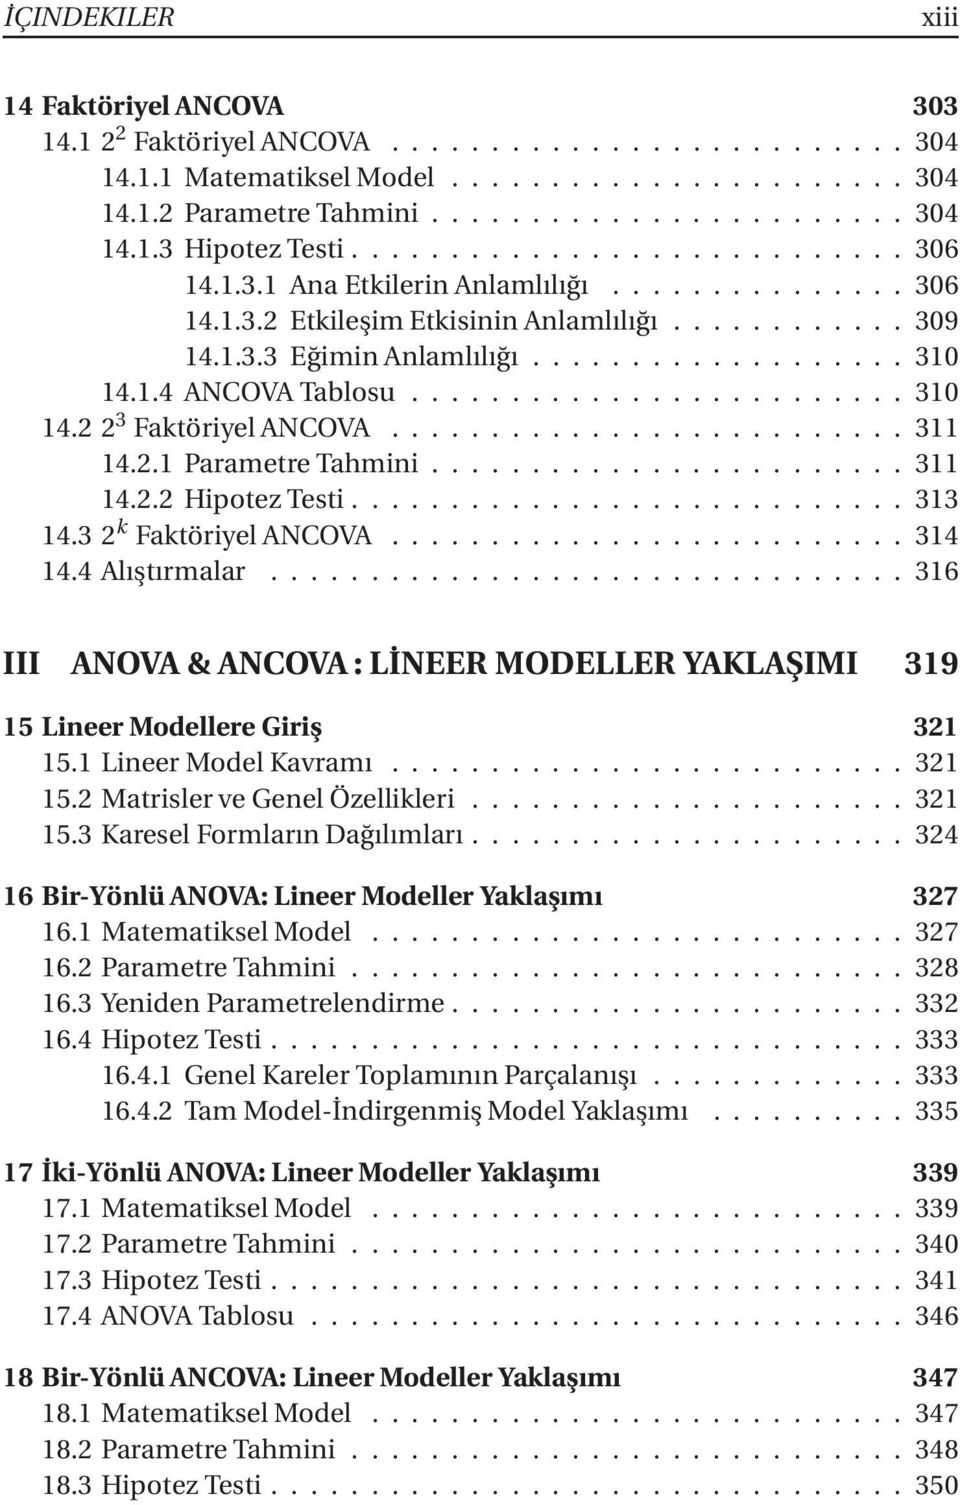 4 Alıştırmalar...316 III ANOVA & ANCOVA : LİNEER MODELLER YAKLAŞIMI 319 15 Lineer Modellere Giriş 321 15.1LineerModelKavramı...321 15.2MatrislerveGenelÖzellikleri...321 15.3 Karesel Formların Dağılımları.